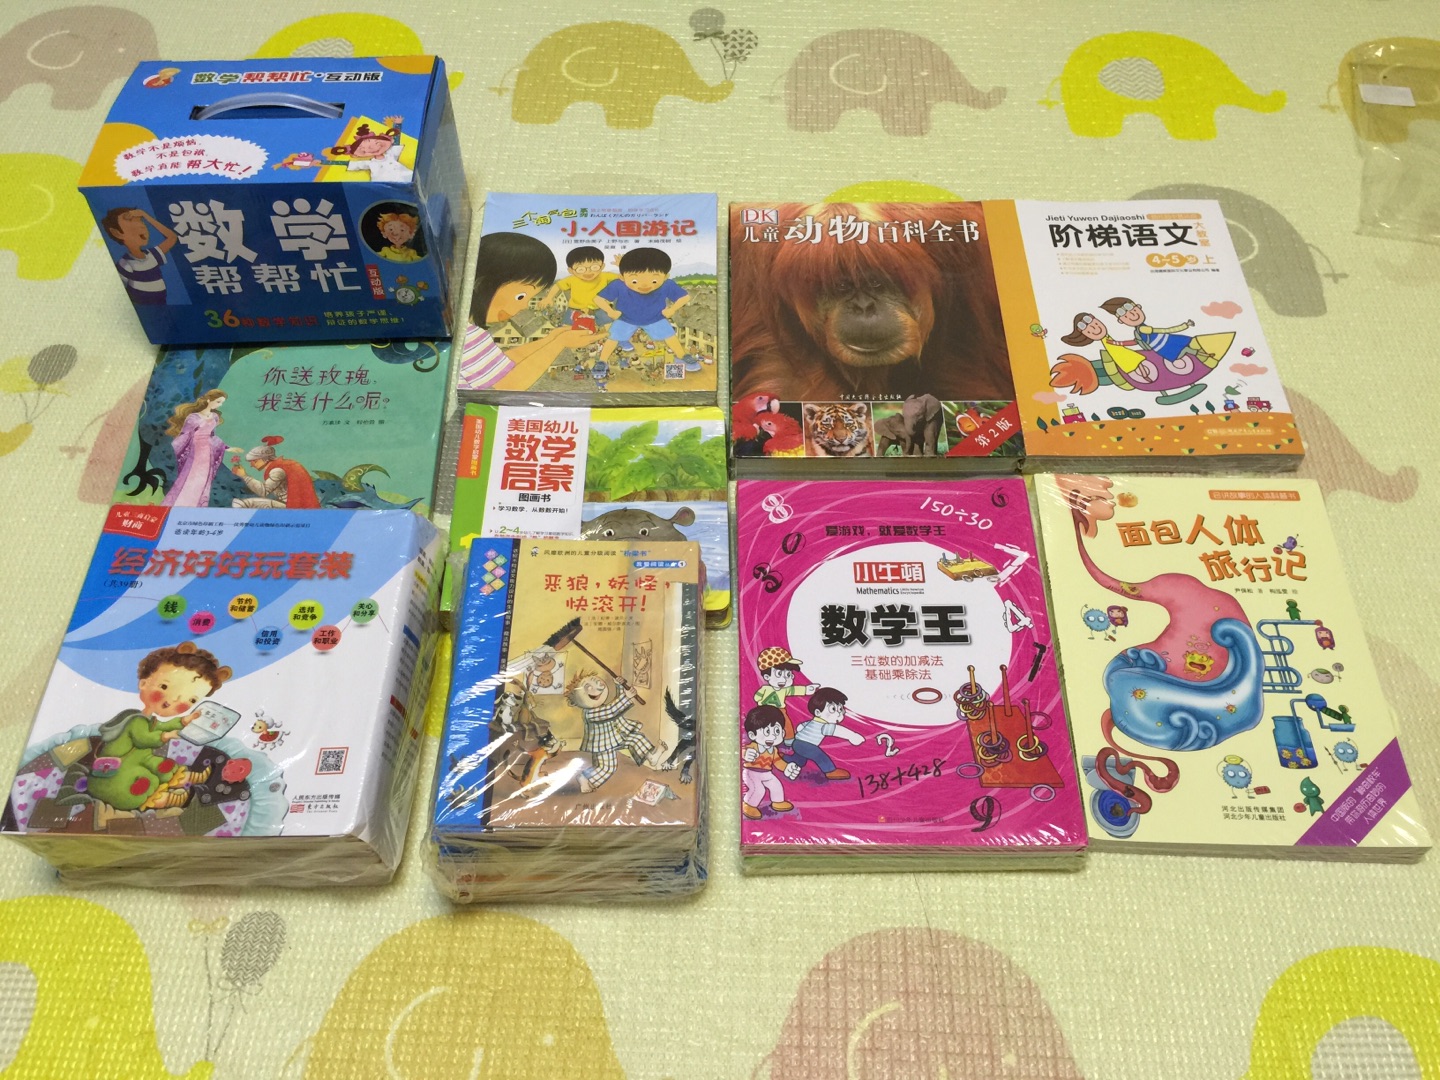 都说这个书挺有意思的 有中文和英文两个版本 买了中文的 提前给孩子囤着 内容应该不错 活动价格很合适